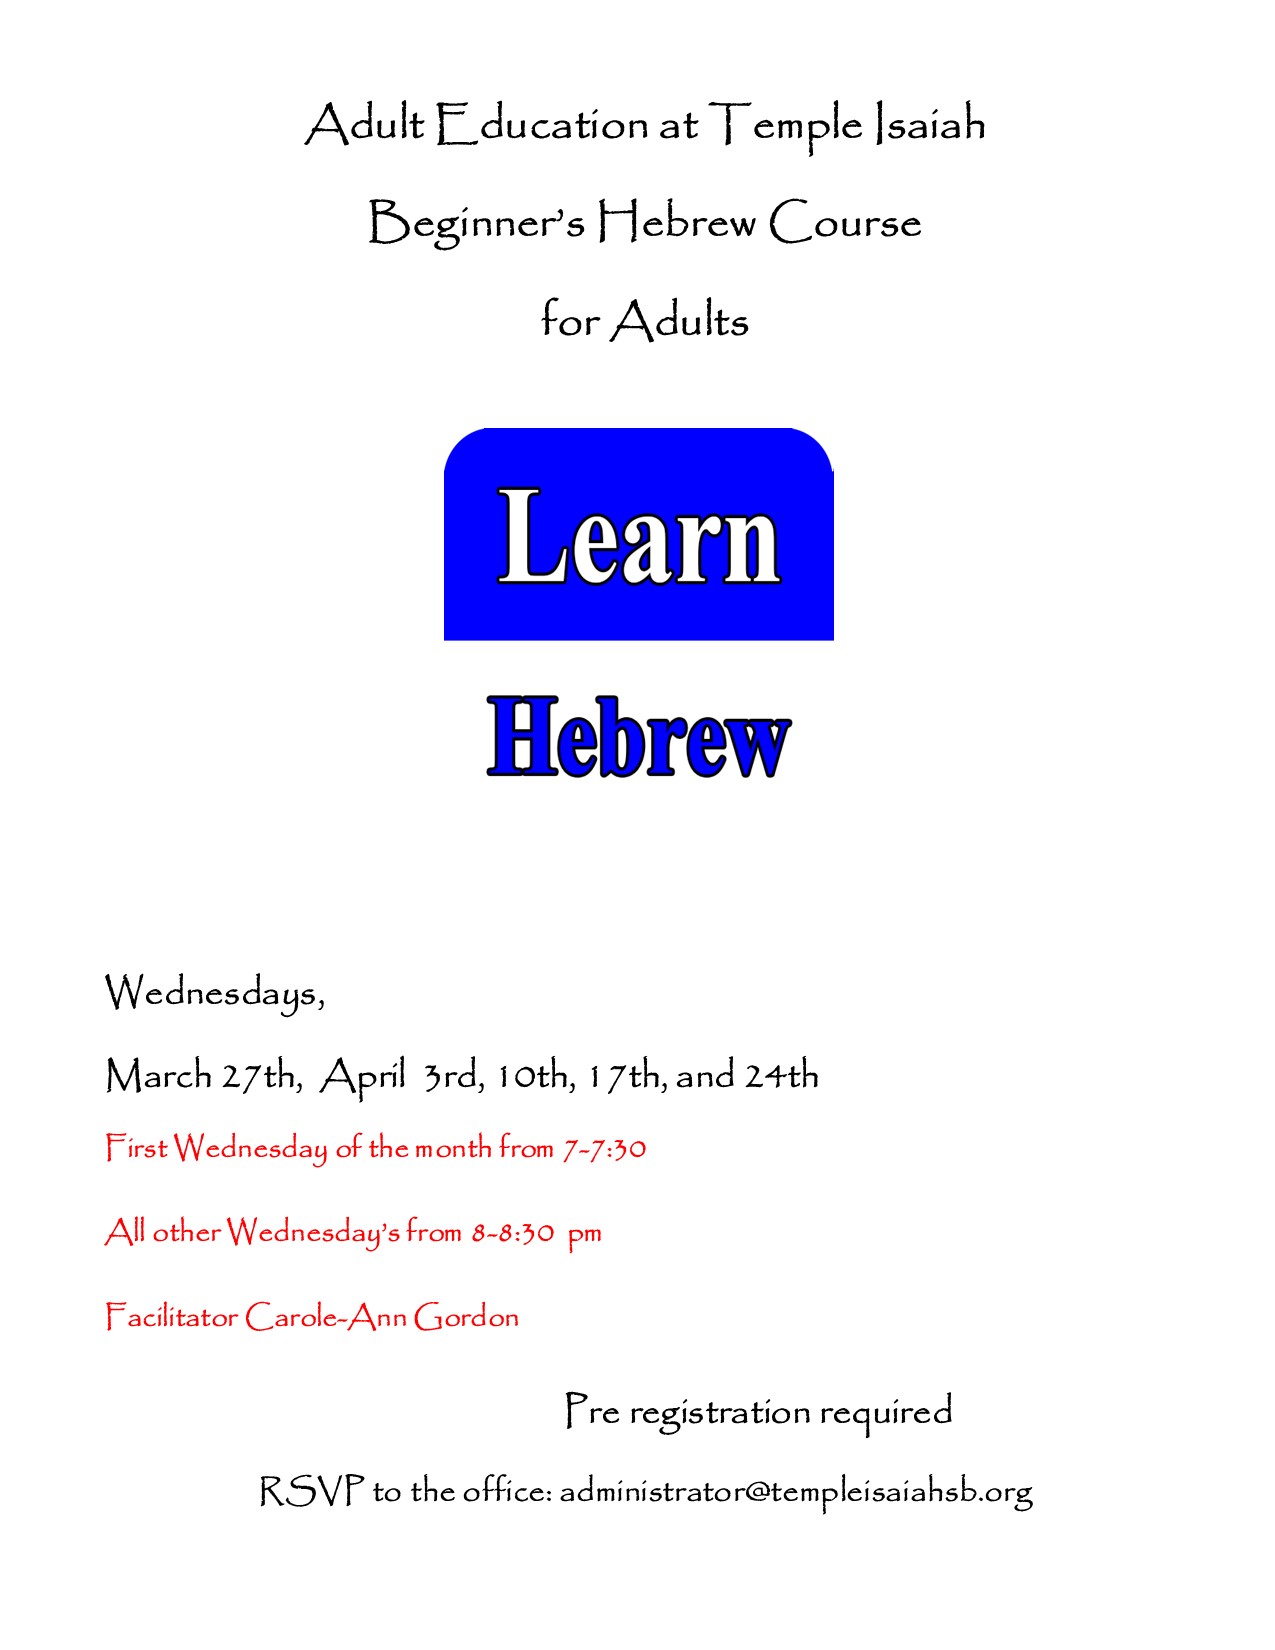 Beginners Hebrew Course 1